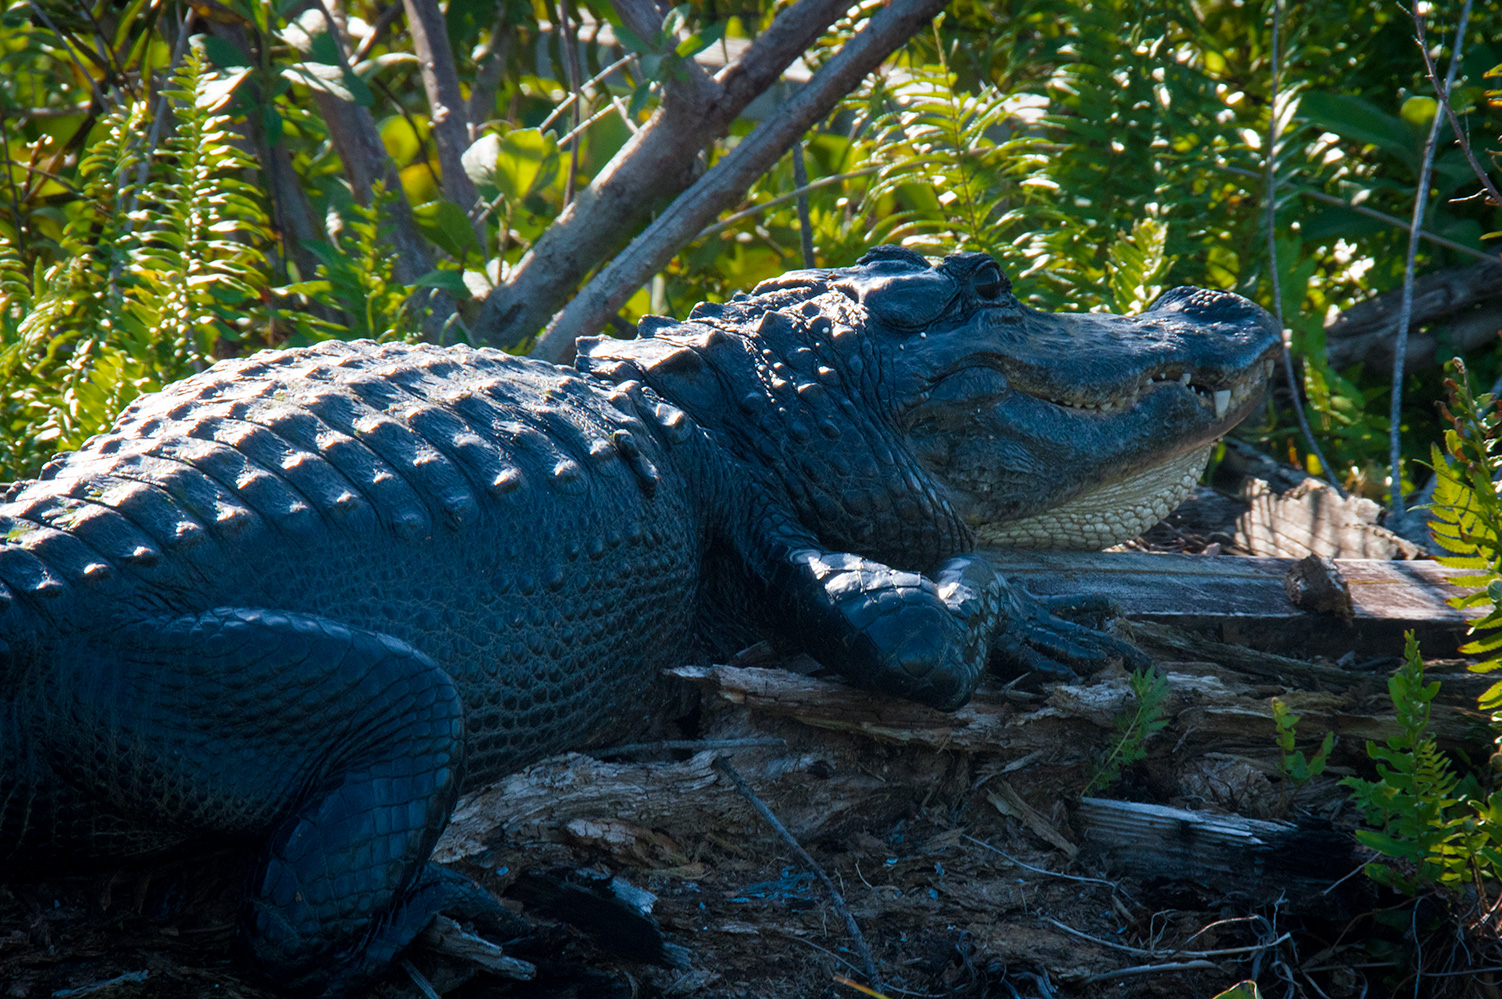 American Alligator (Alligator mississippiensis) in the Everglades.